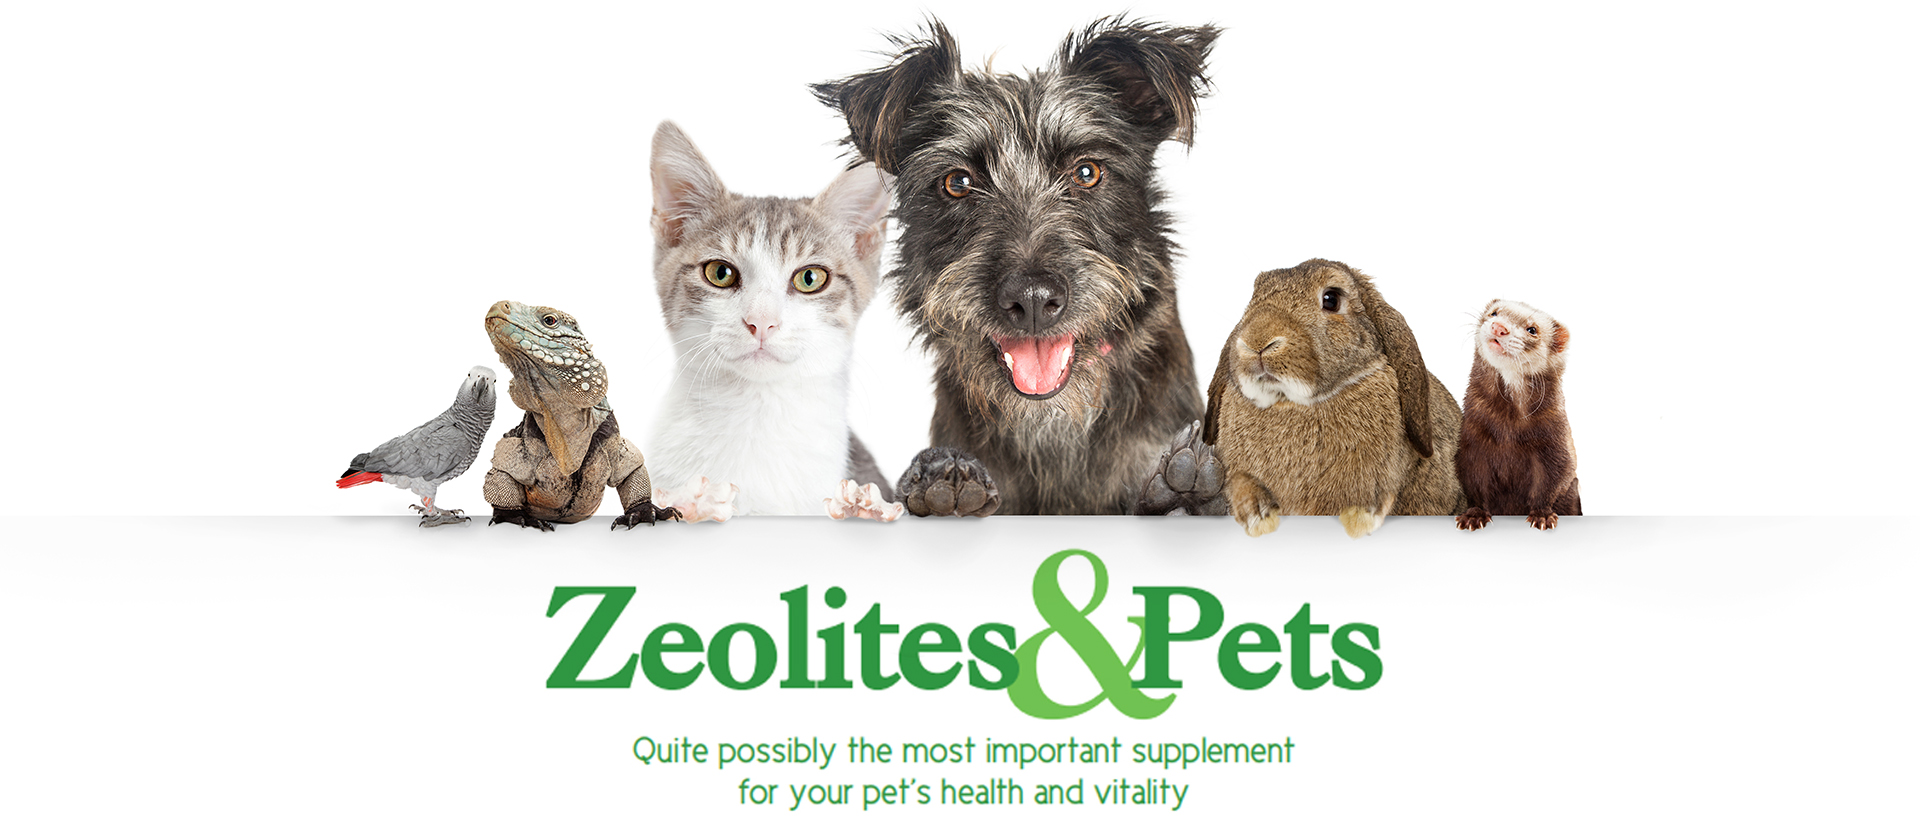 Zeolites & Pets